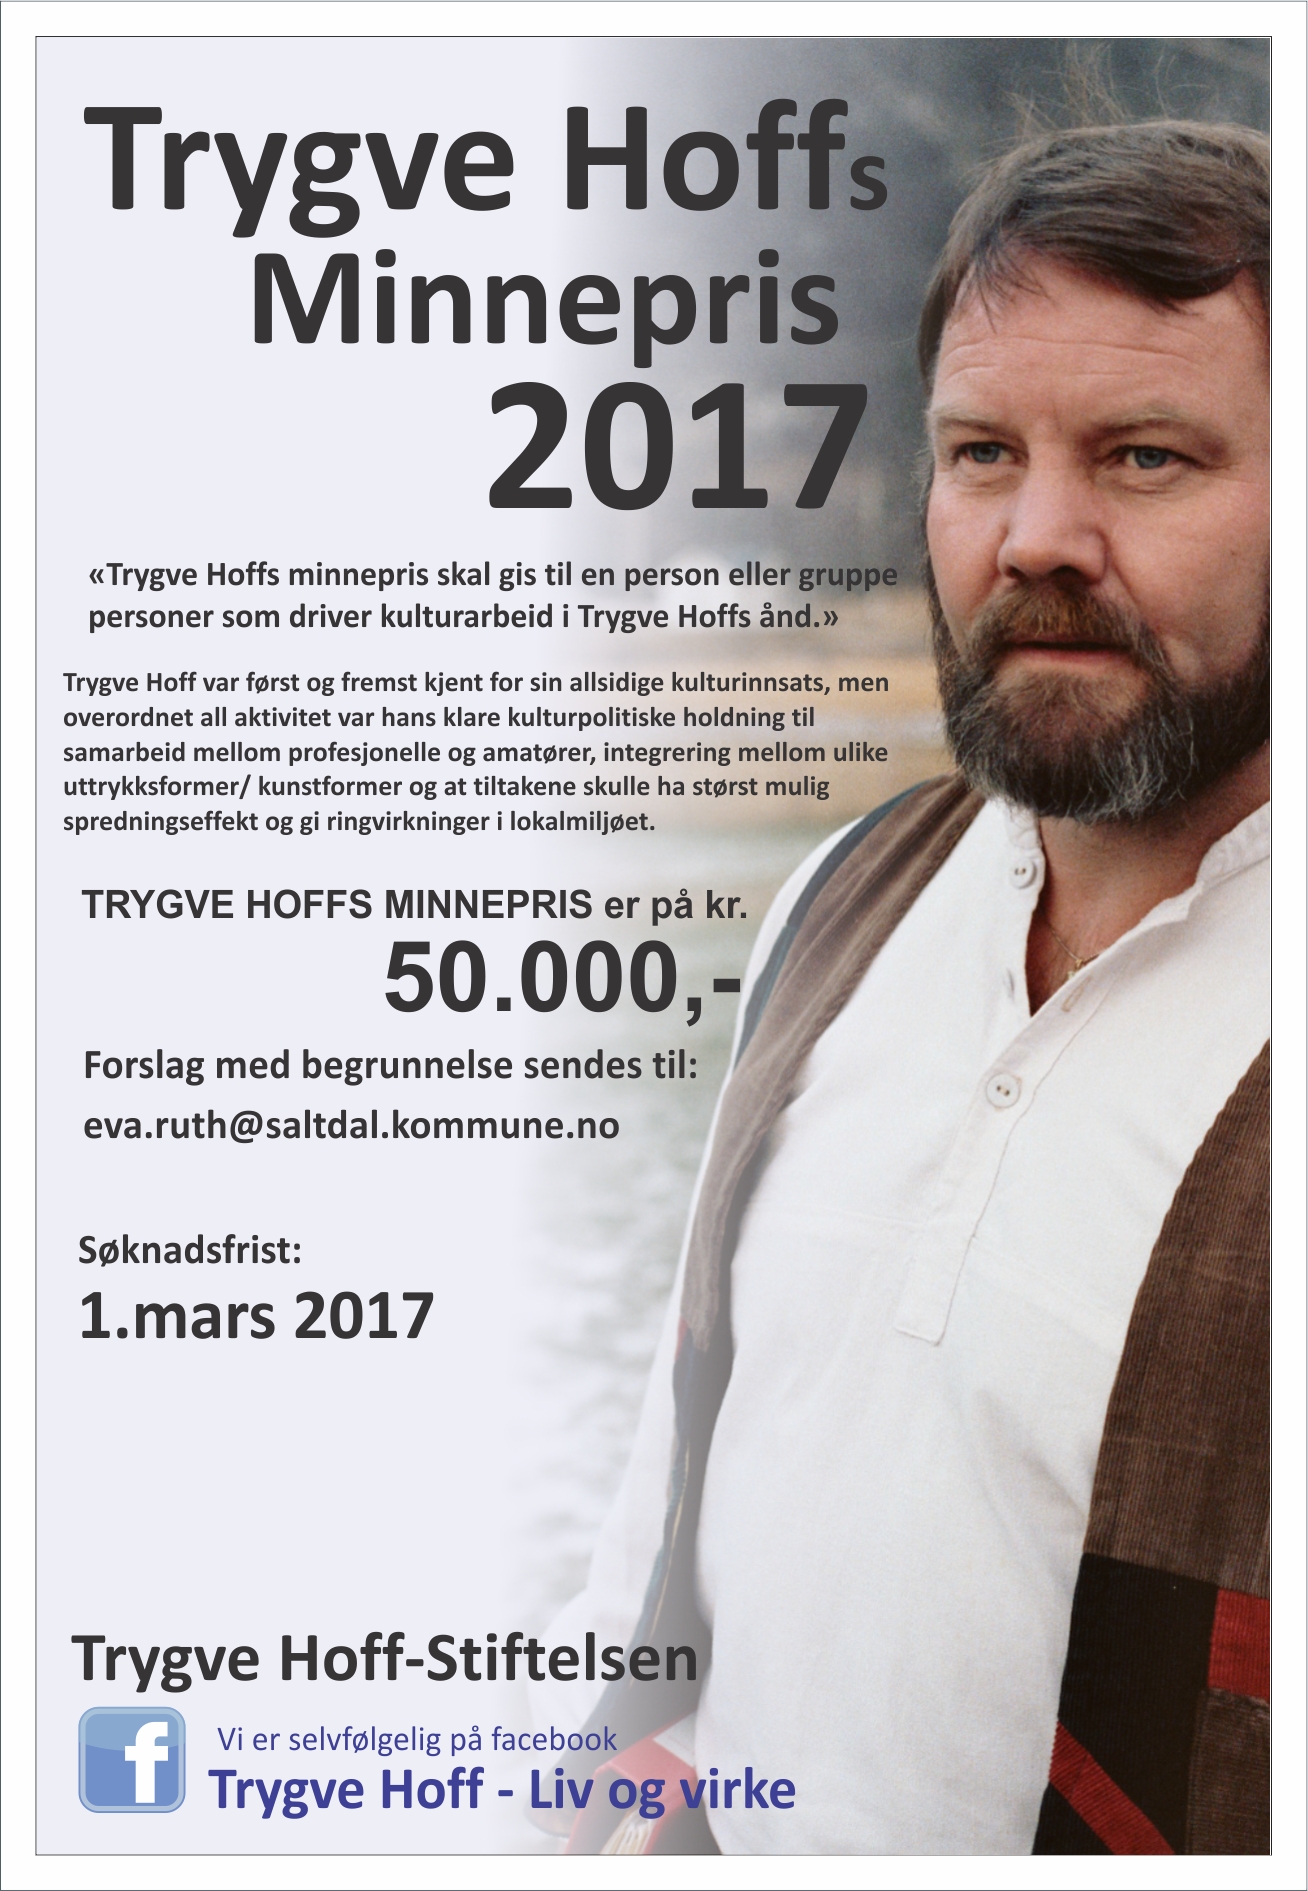 Trygve Hoffs minnepris 2017